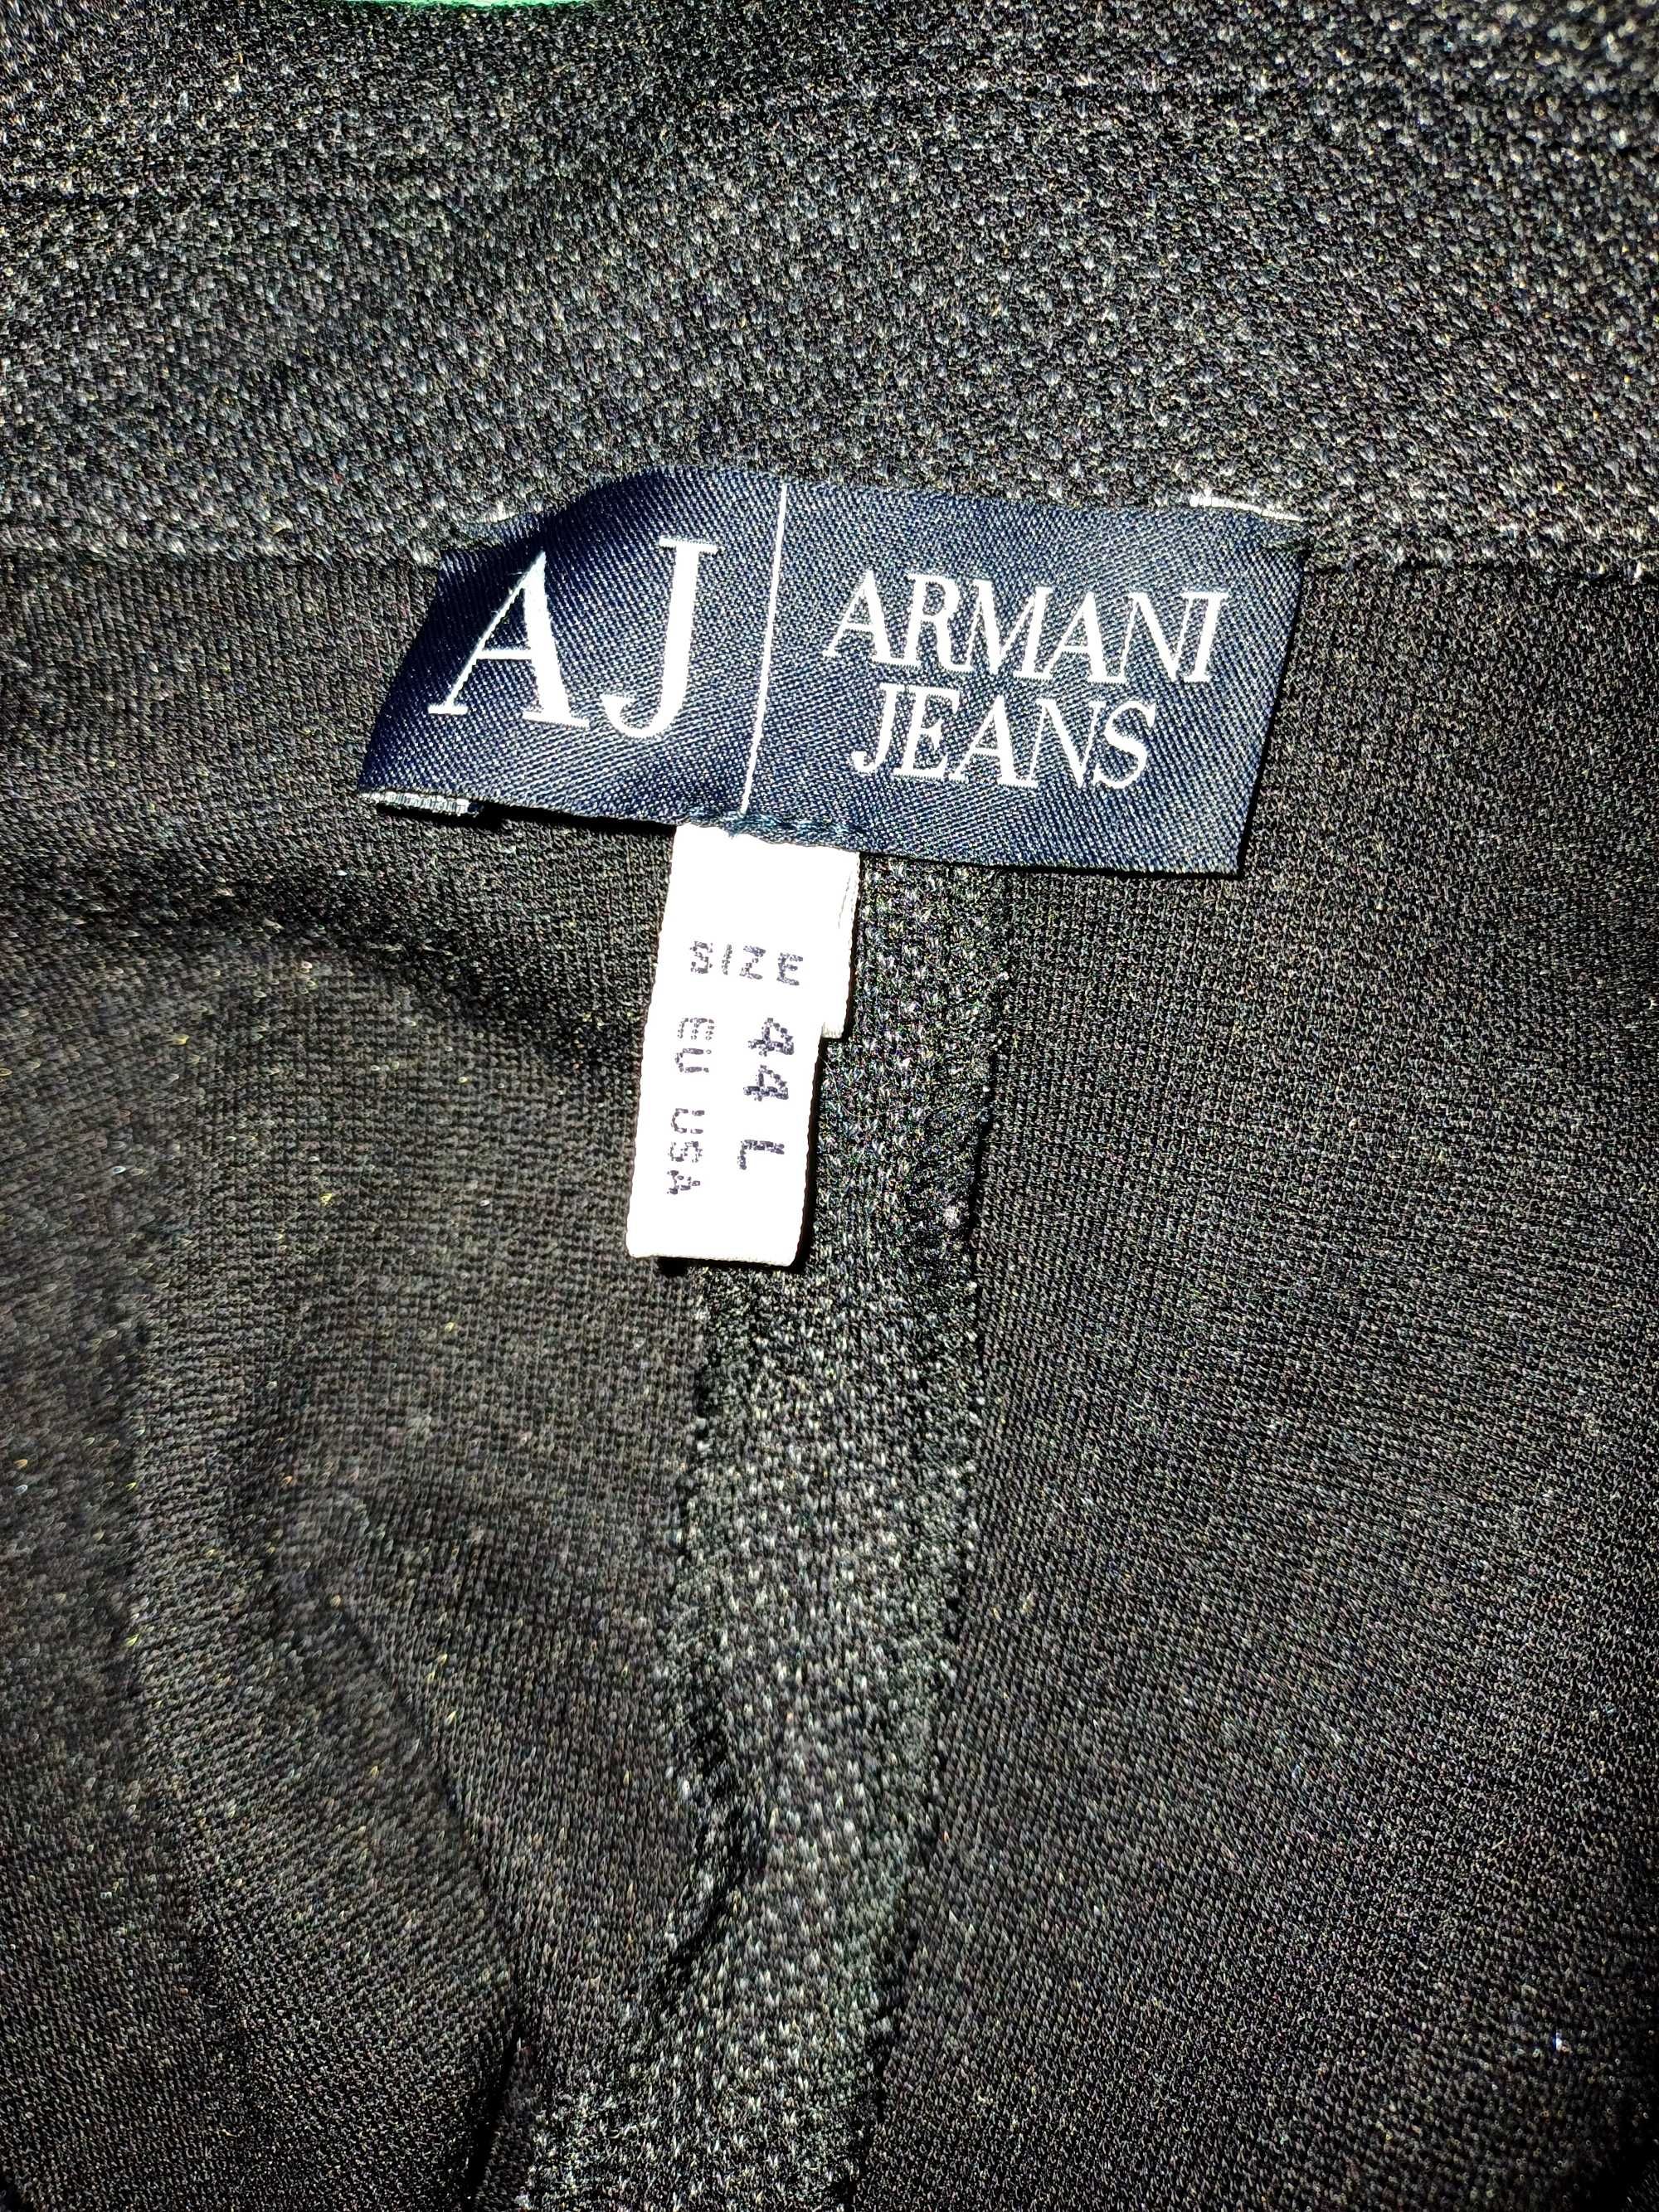 Фірмовий жакет / піджак Armani jeans. Розмір 44, L.